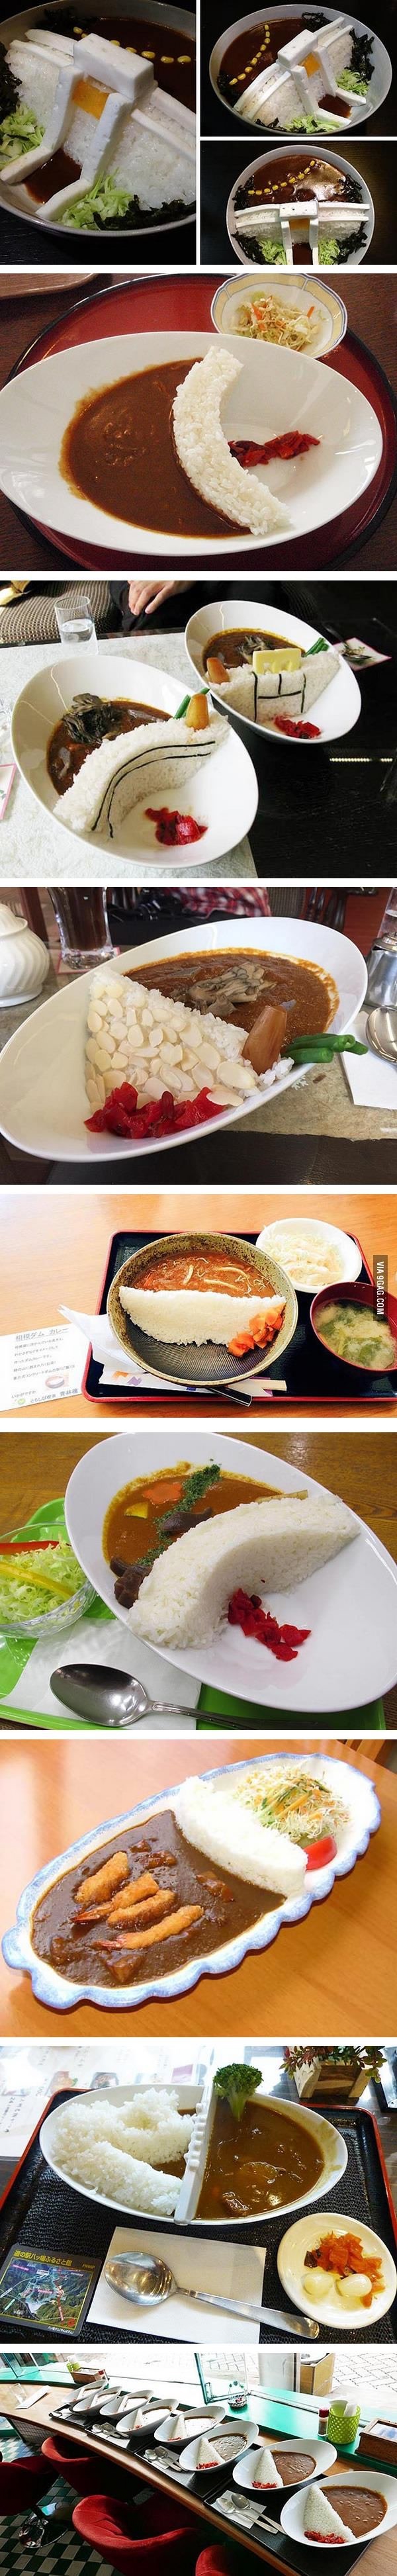 요즘 일본에서 유행하는 음식